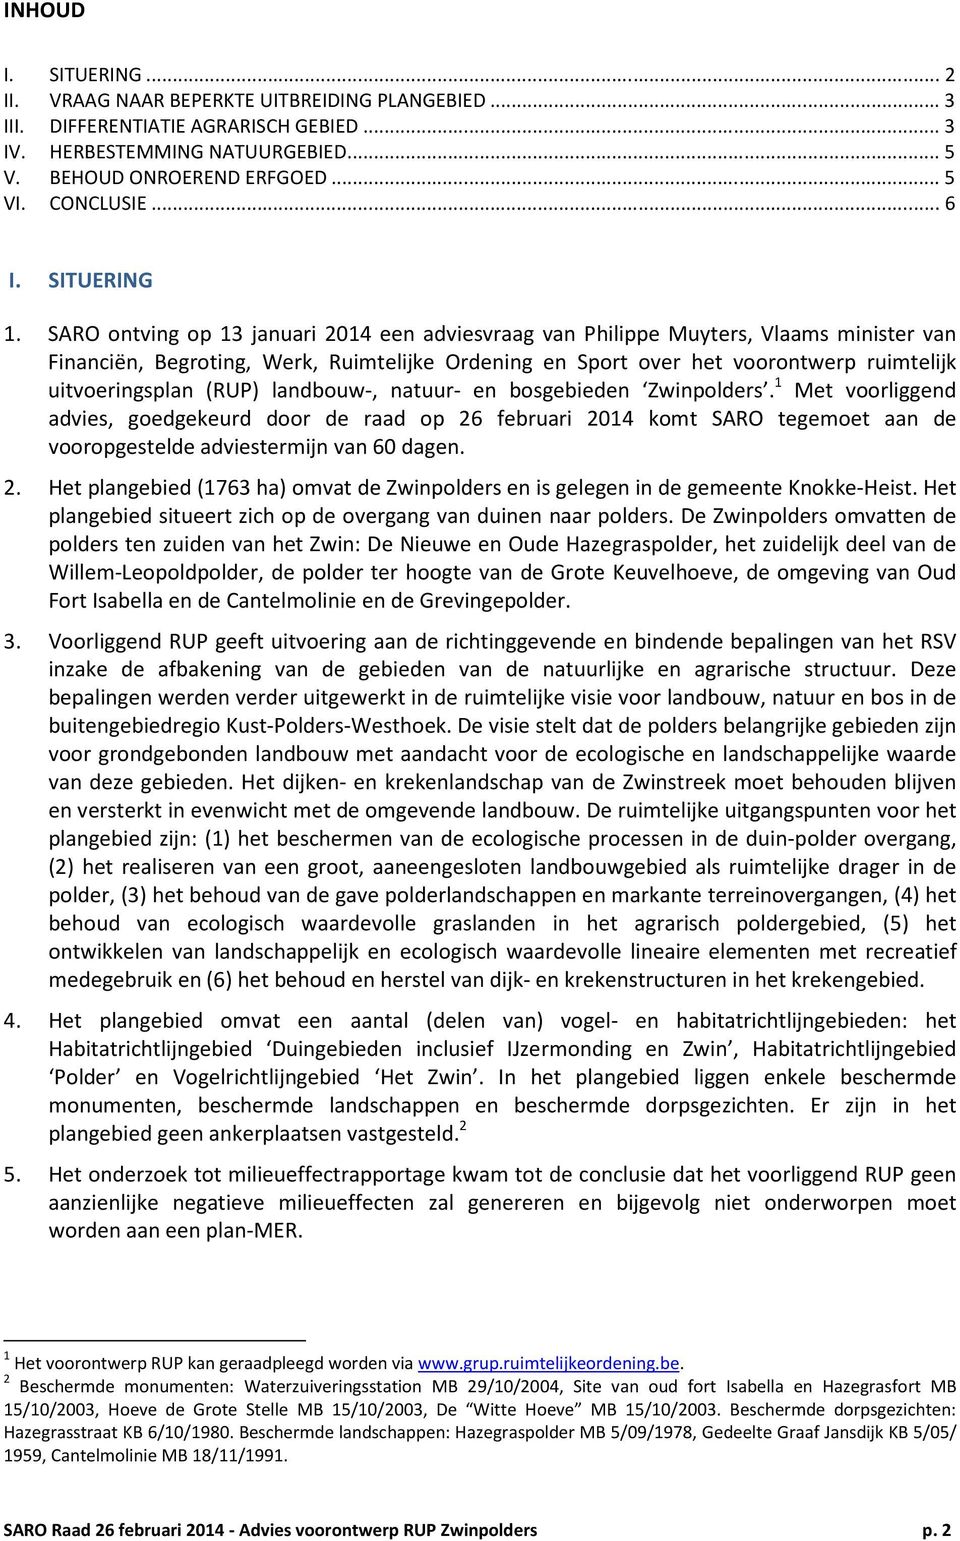 SARO ontving op 13 januari 2014 een adviesvraag van Philippe Muyters, Vlaams minister van Financiën, Begroting, Werk, Ruimtelijke Ordening en Sport over het voorontwerp ruimtelijk uitvoeringsplan